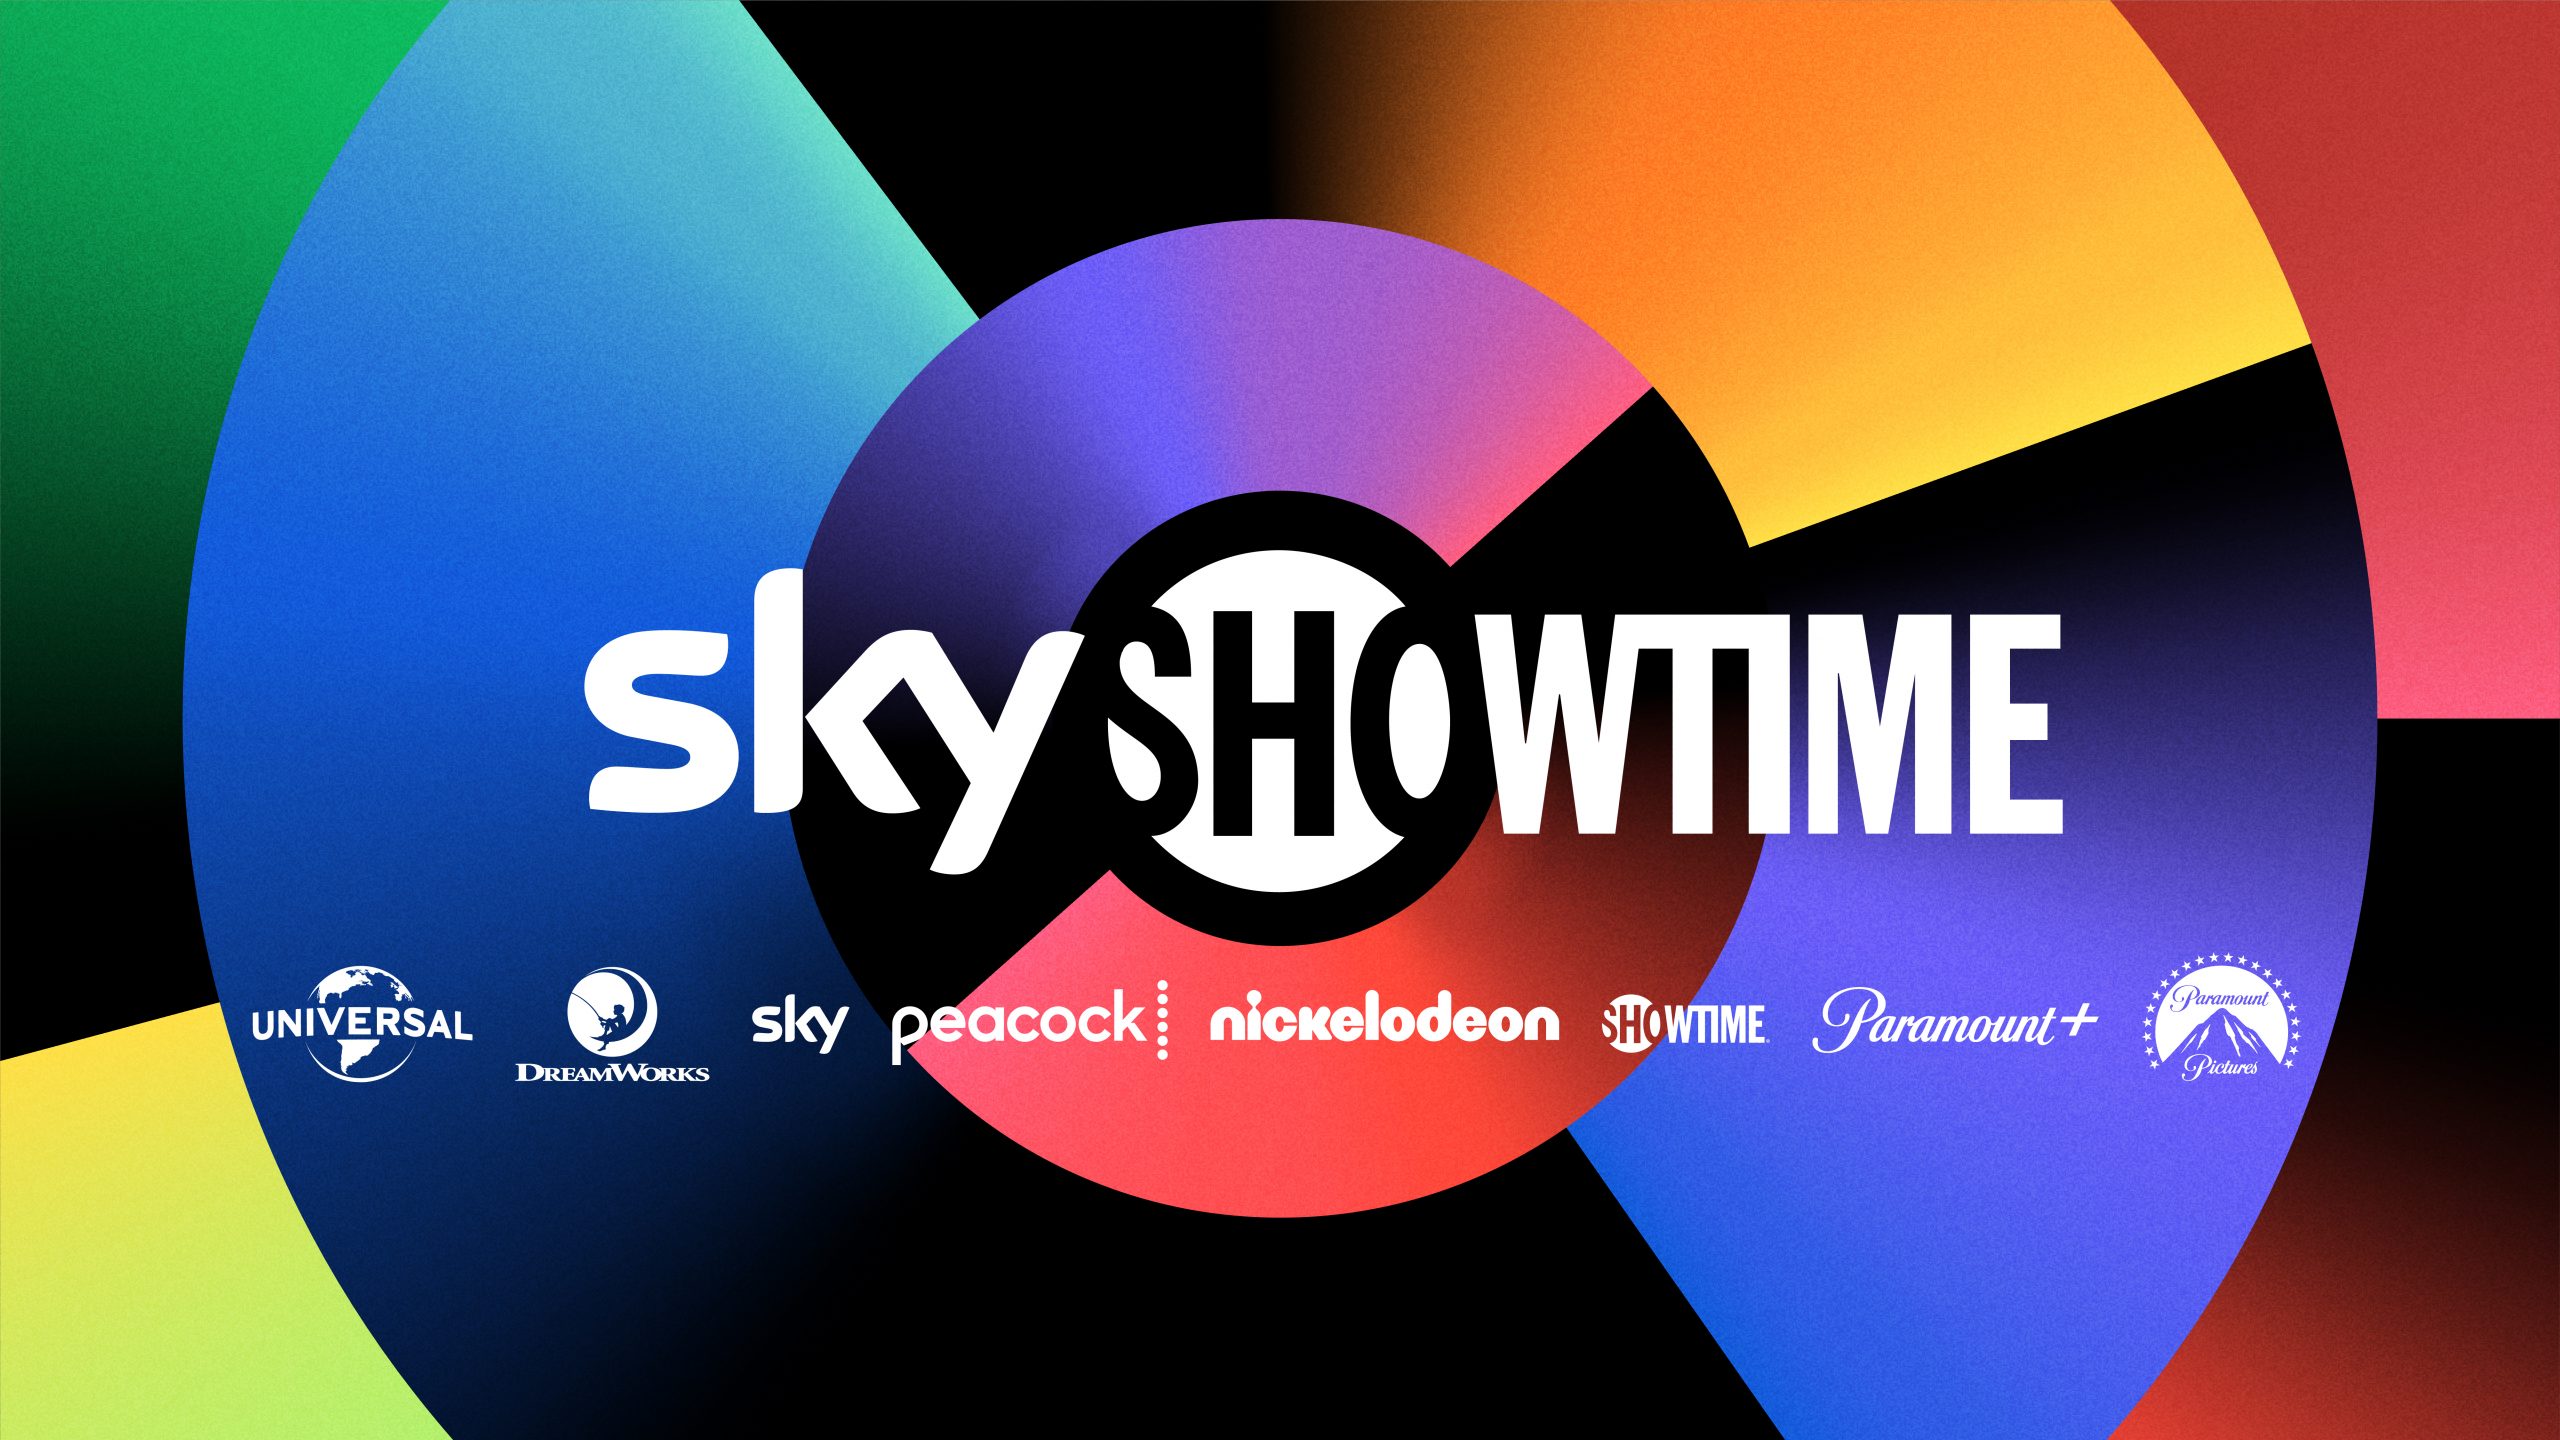 10618 skyshowtime master logo key asset aw 300dpi 16 9 scaled